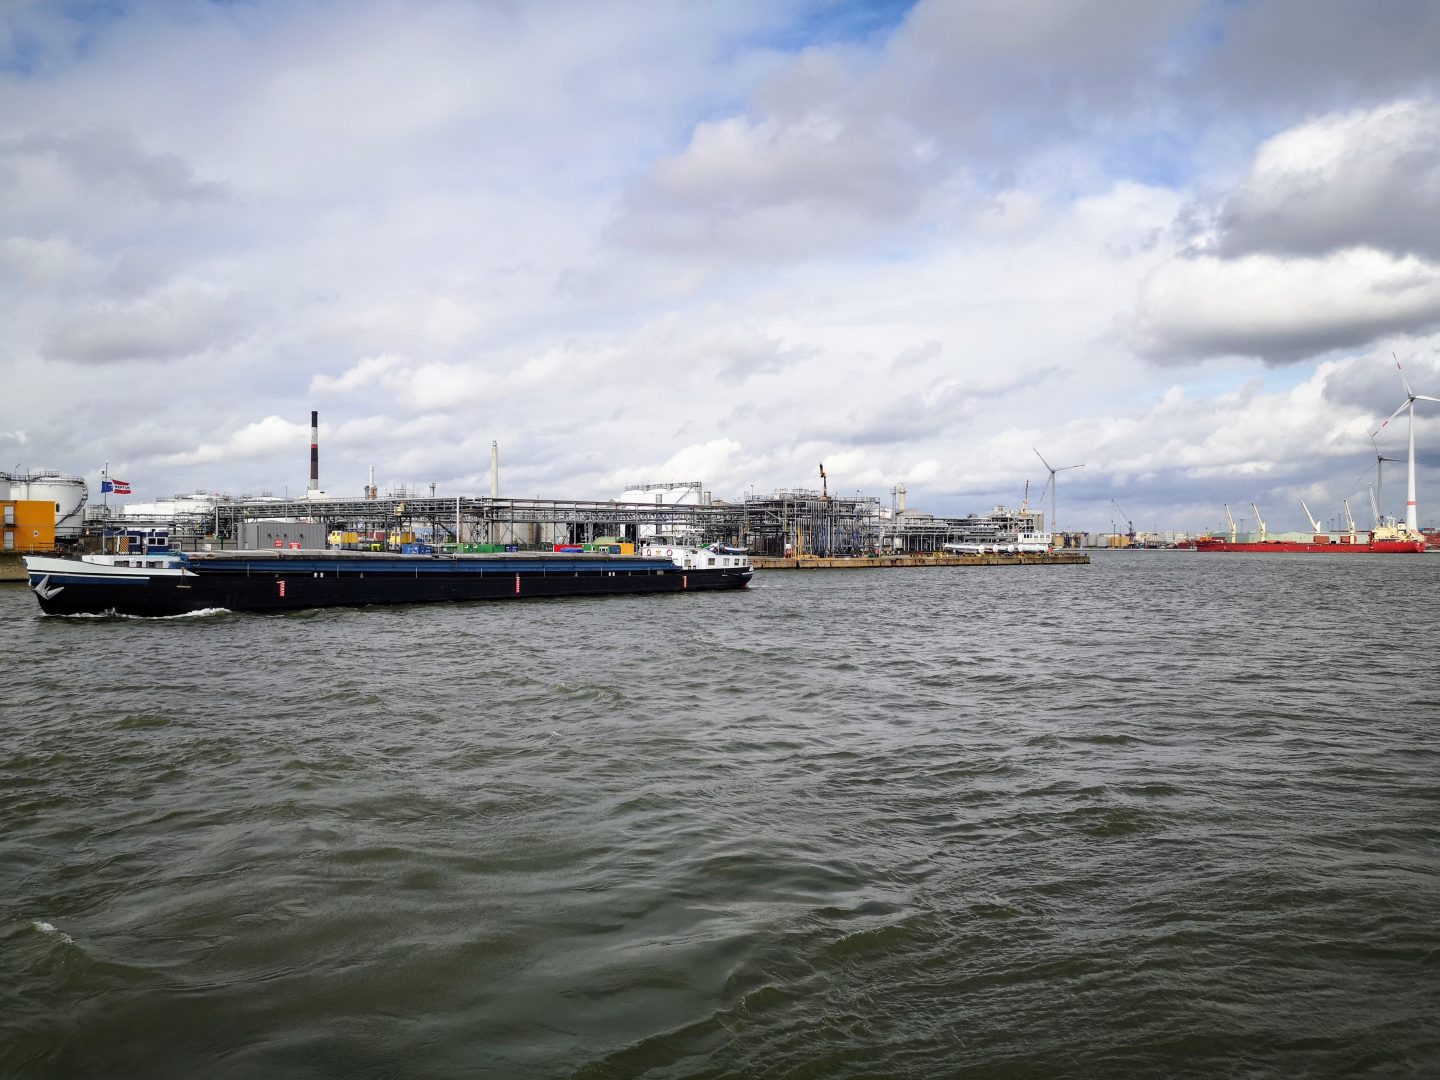 Hafen in Antwerpen